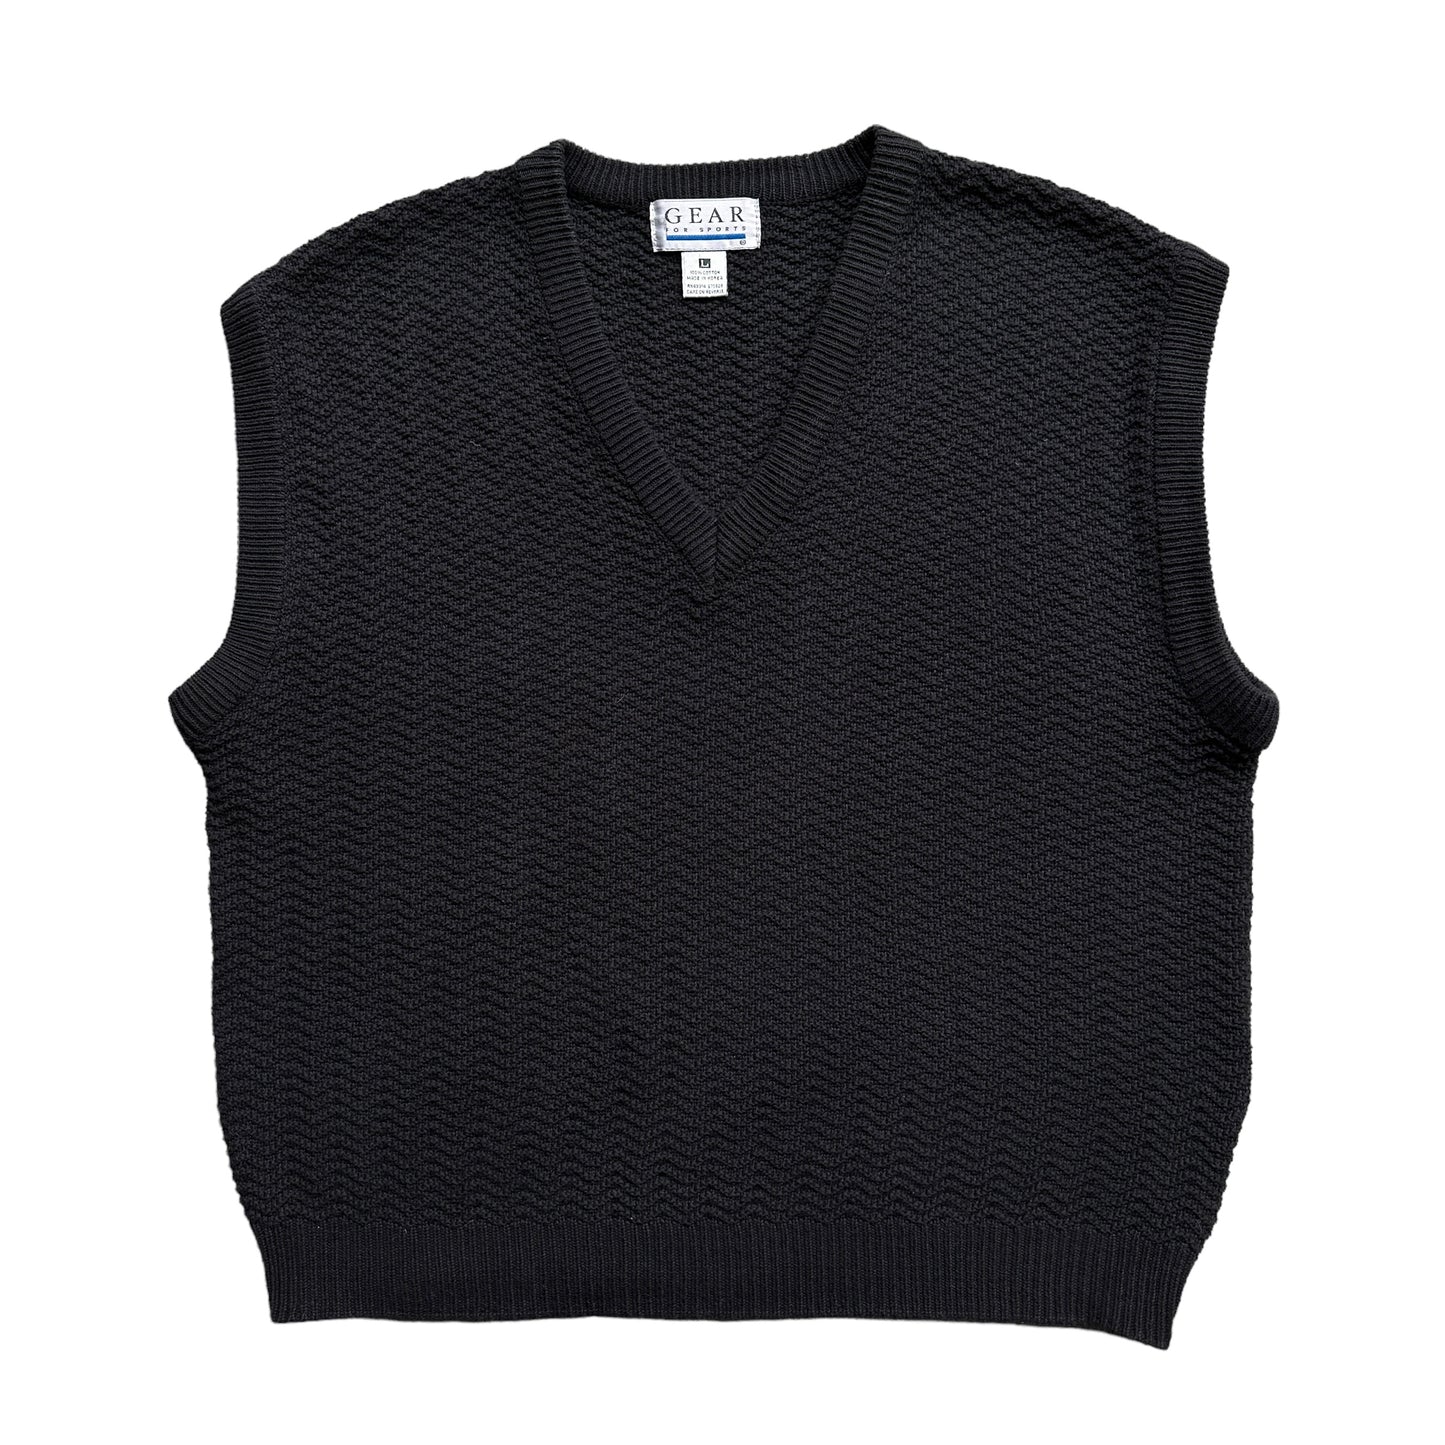 Woven cotton sweater vest large